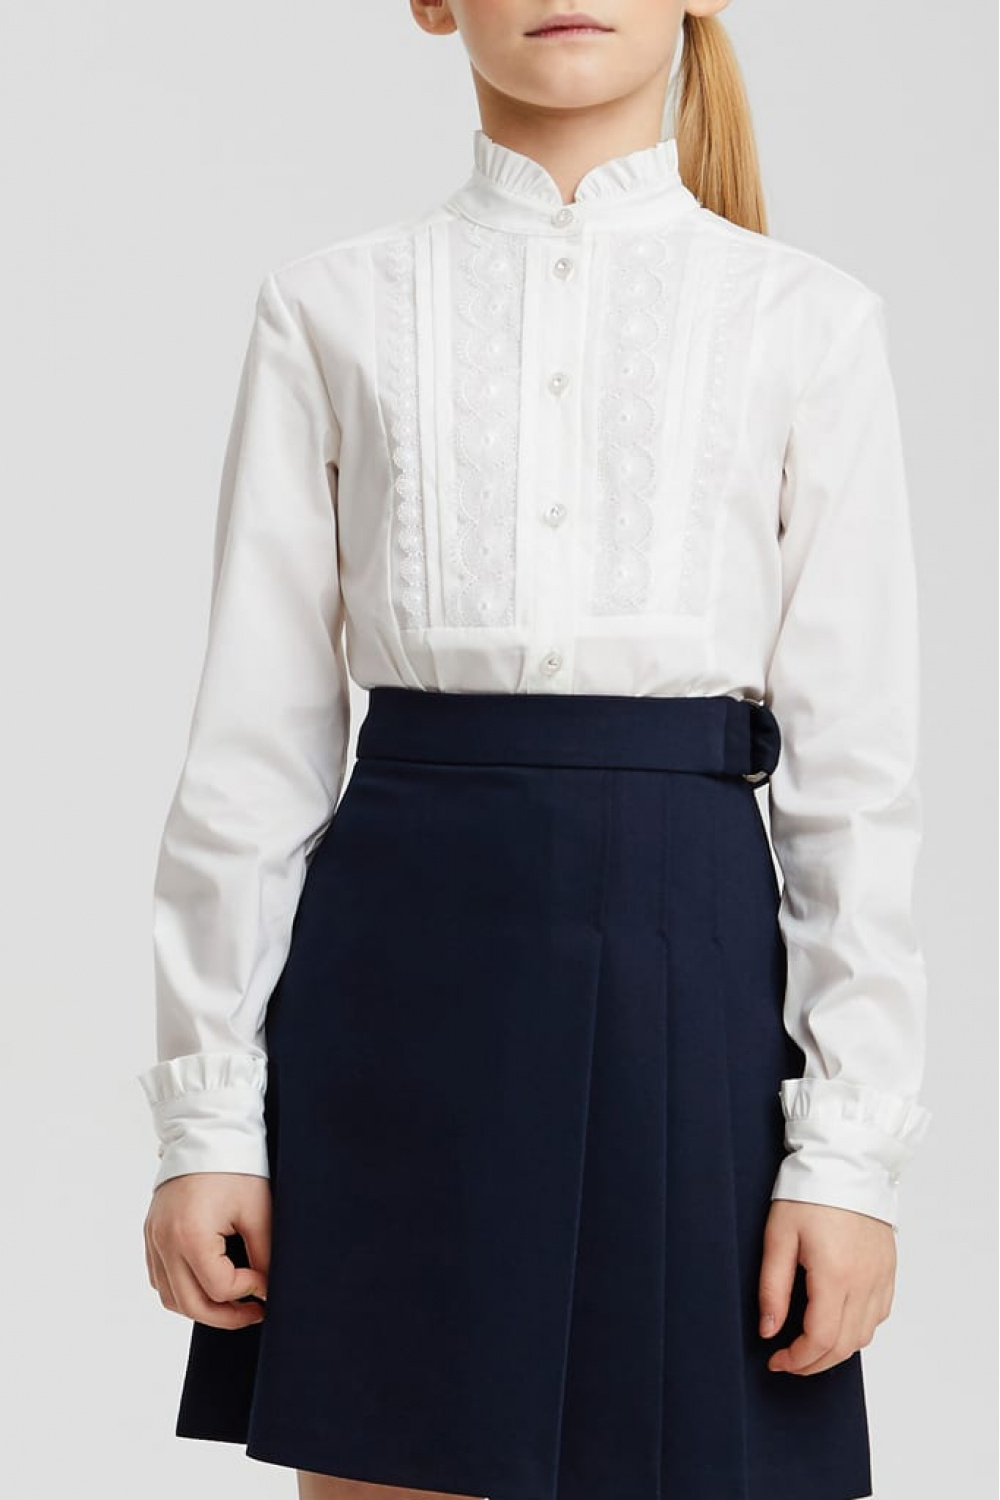 Хлопковая блузка с кружевом и оборками на воротнике и манжетах